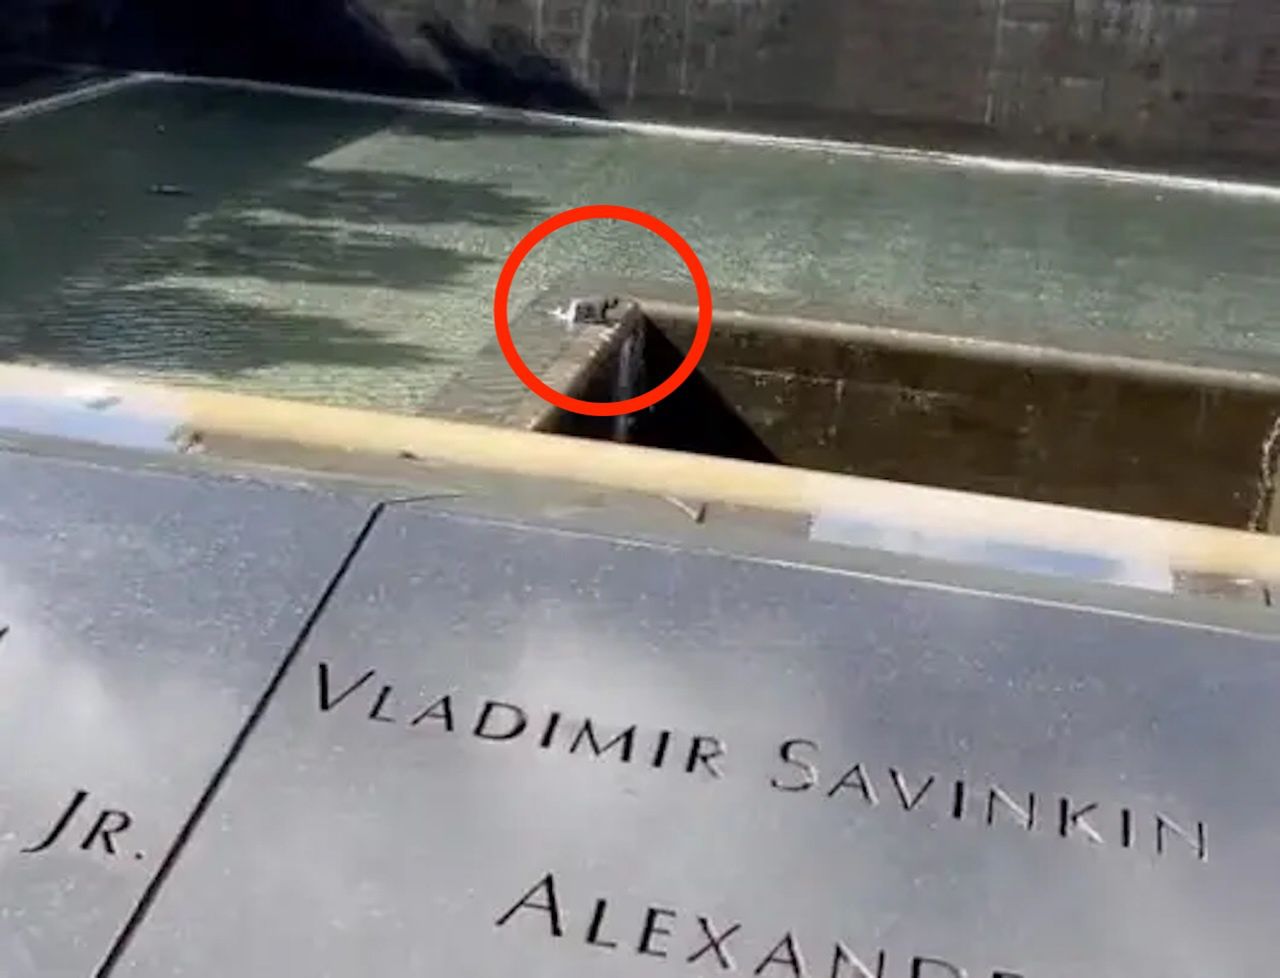 Skoczył do basenu na terenie pomniku pamięci 9.11. Przeżył, ale został aresztowany